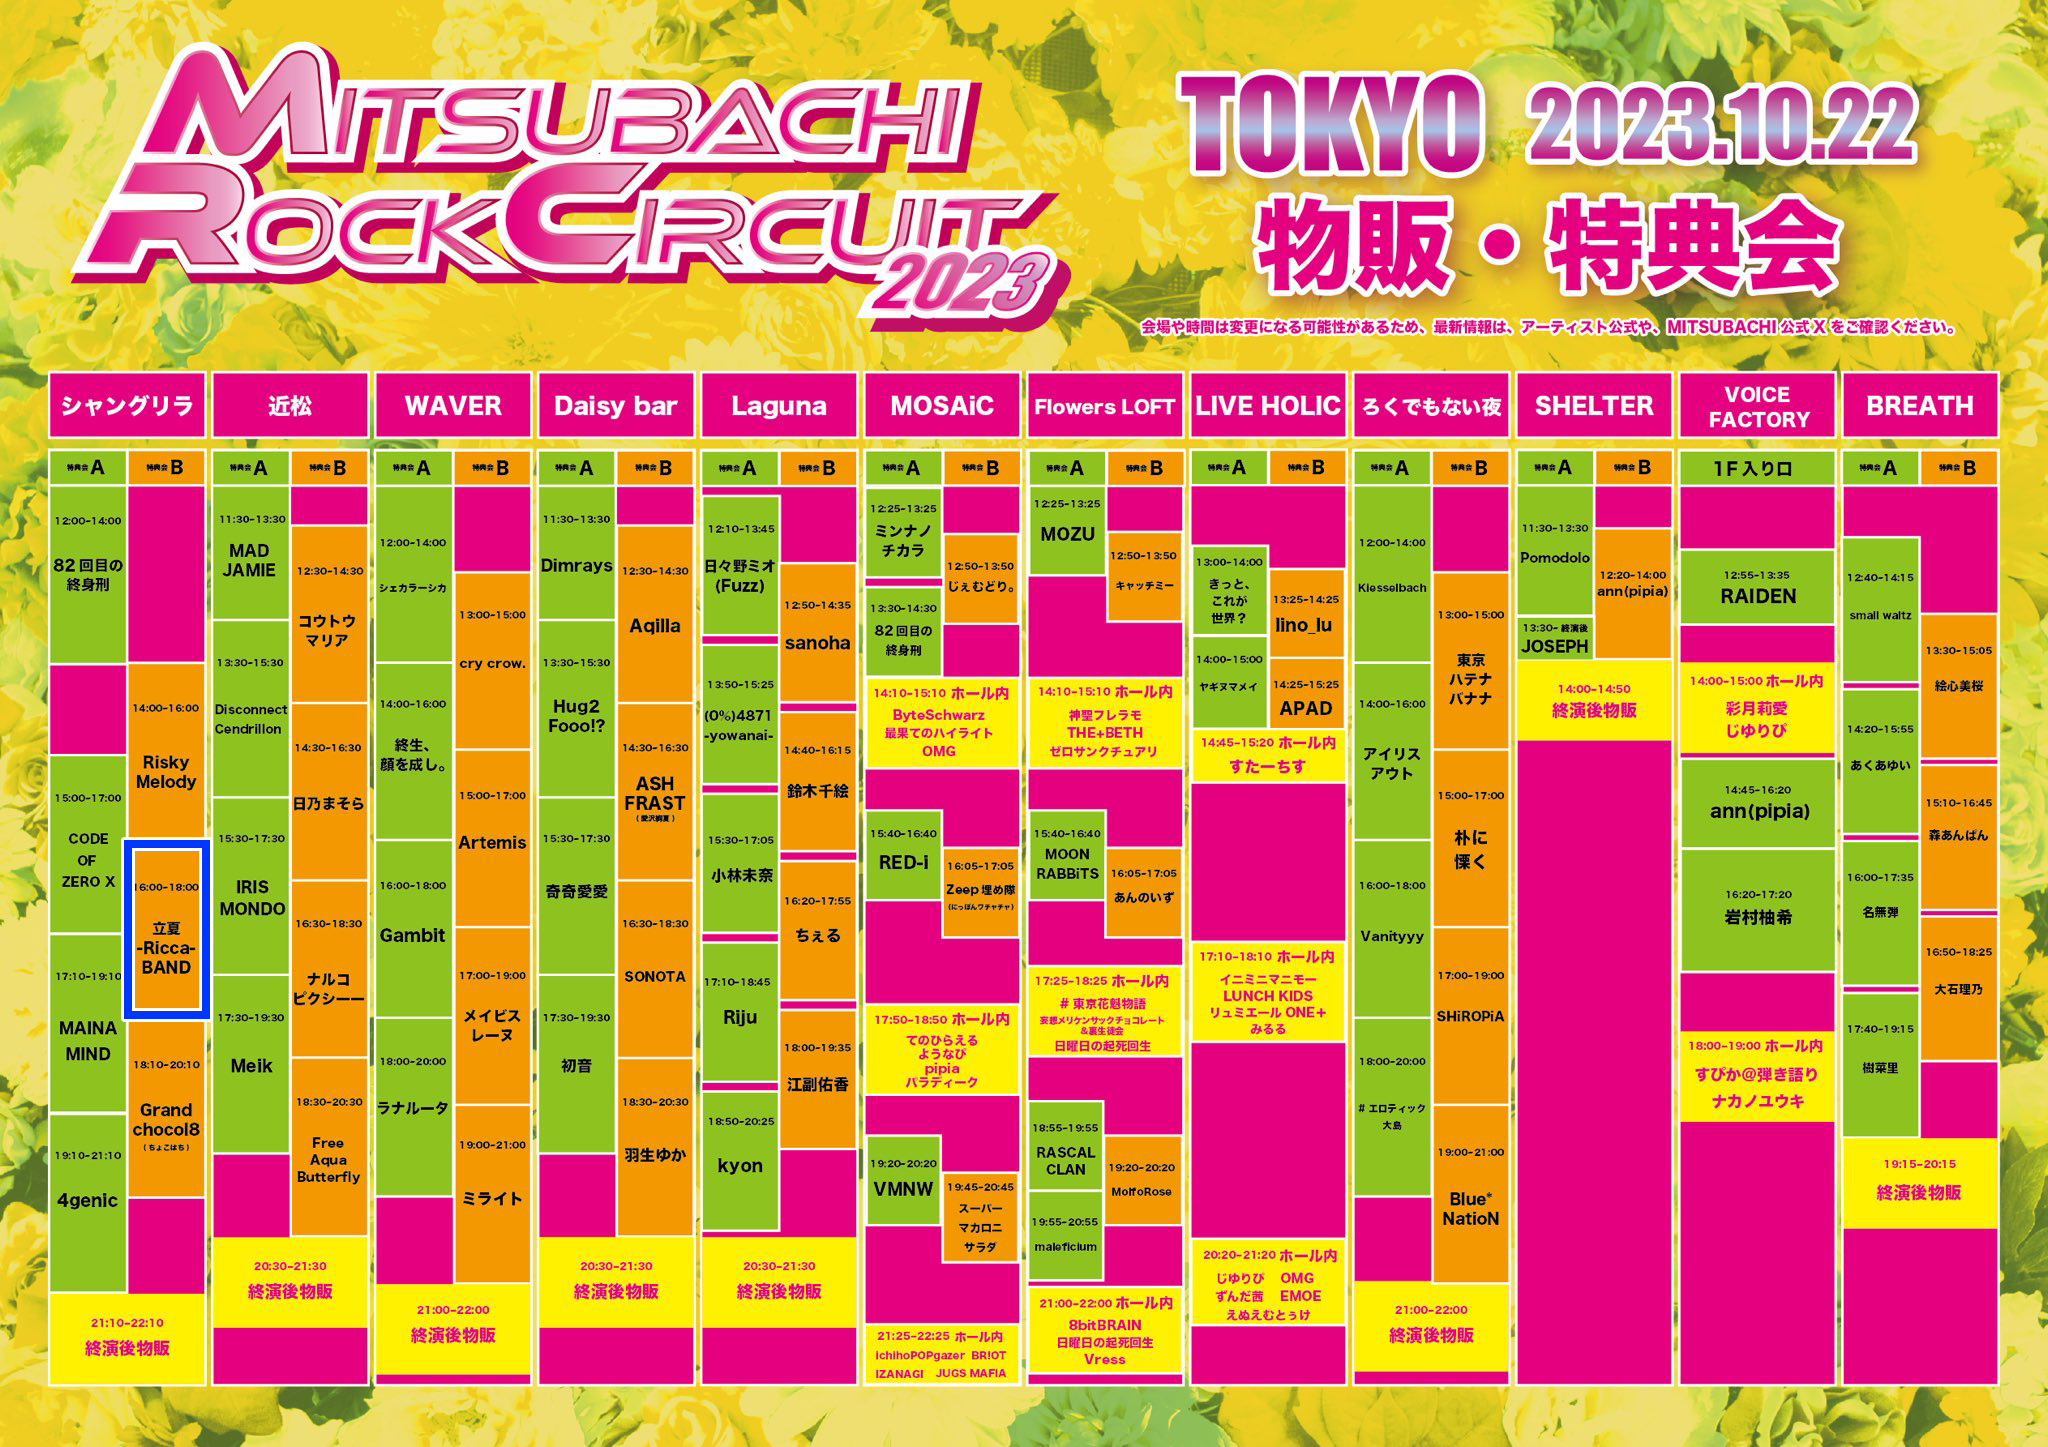 星井あおサポート出演公演(立夏-Ricca-BAND)「MITSUBACHI ROCK CIRCUIT 2023 in TOKYO」